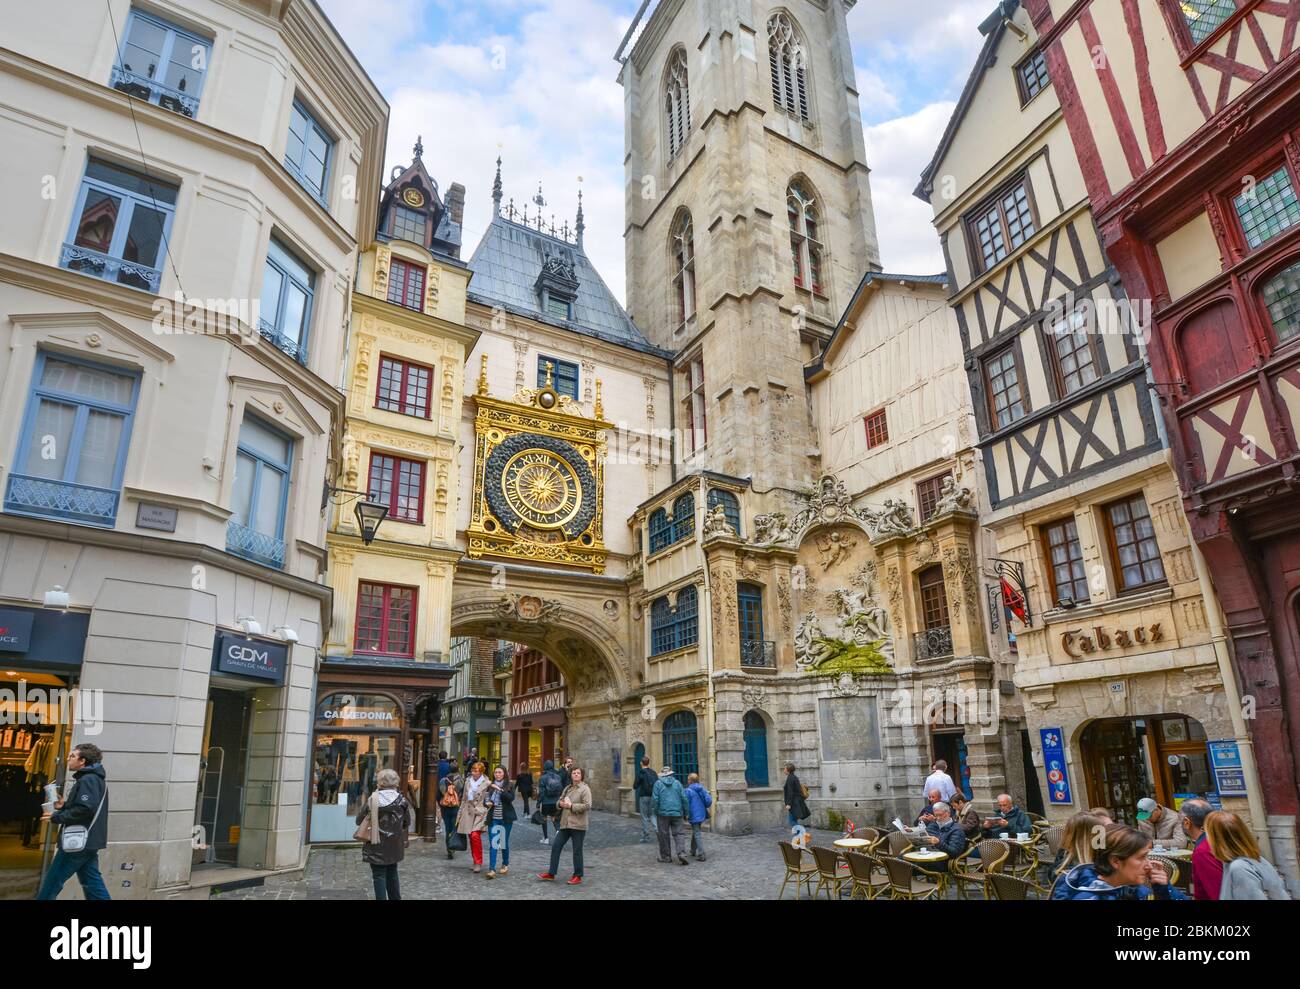 Touristen und Einheimische kommen an und unter dem Gros horloge vorbei, der mittelalterlichen astronomischen Uhr auf der Hauptstraße von Rouen Frankreich Stockfoto